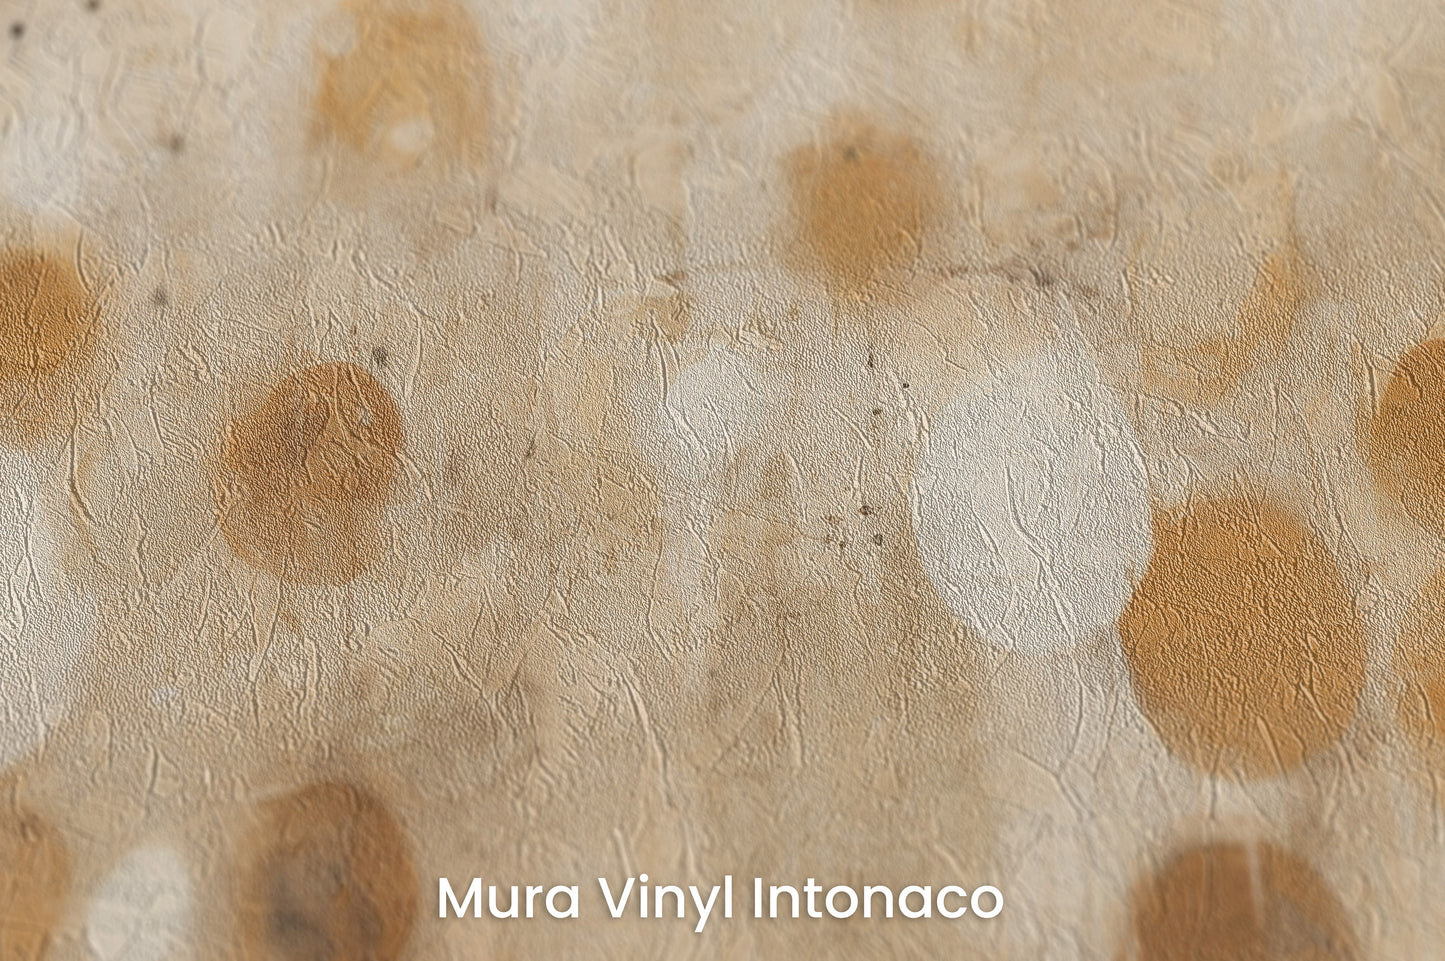 Zbliżenie na artystyczną fototapetę o nazwie AMBIENT ORBITAL ARRAY na podłożu Mura Vinyl Intonaco - struktura tartego tynku.